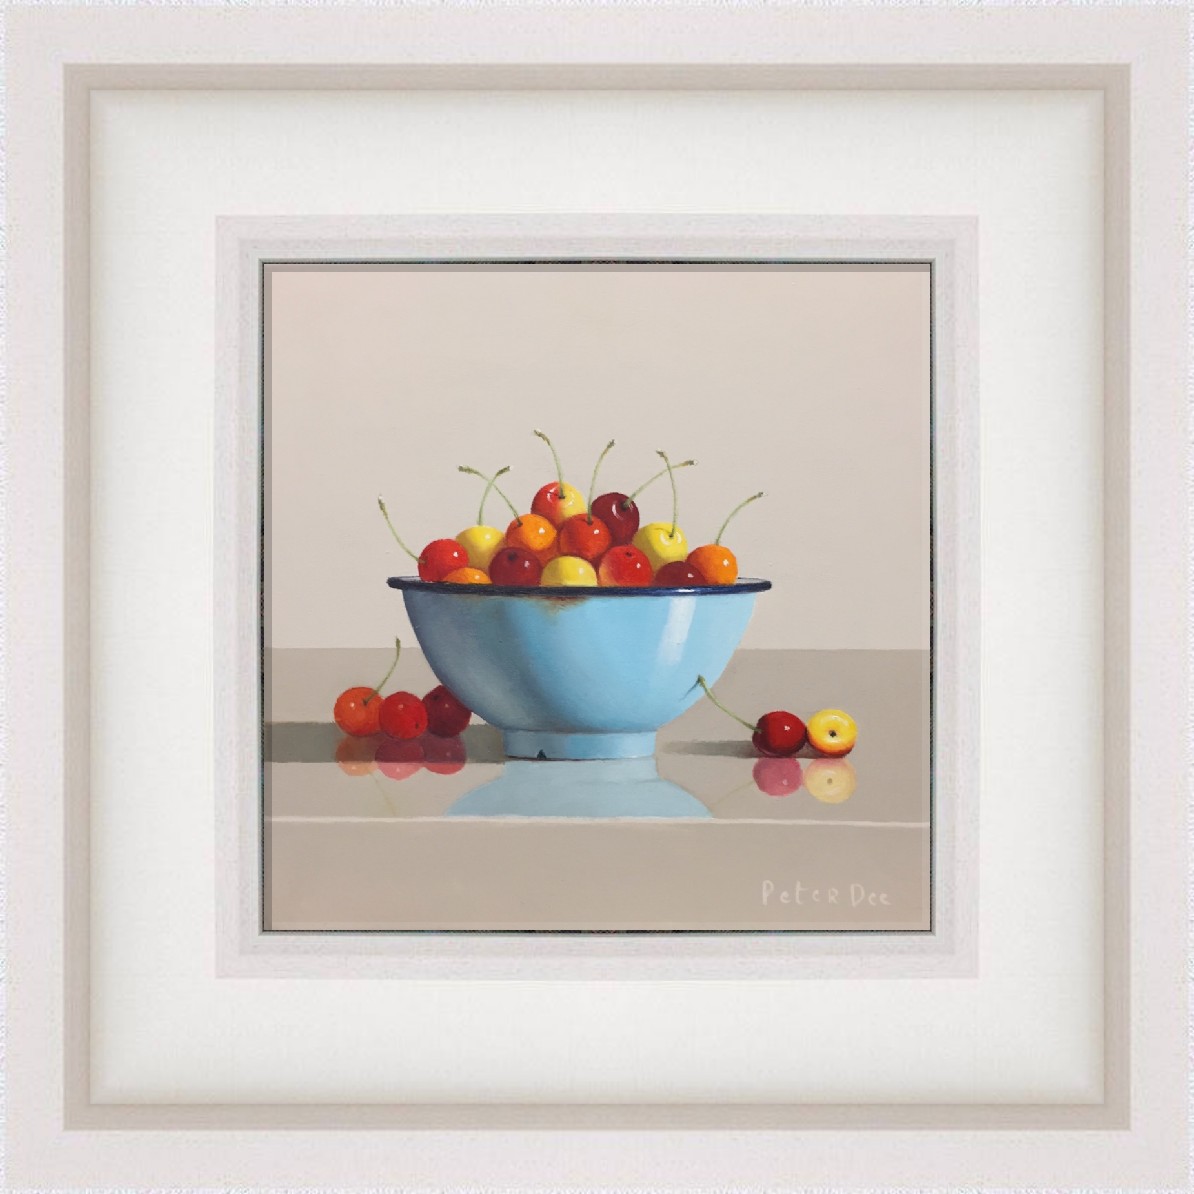 Cherries in Blue Bowl by Peter Dee